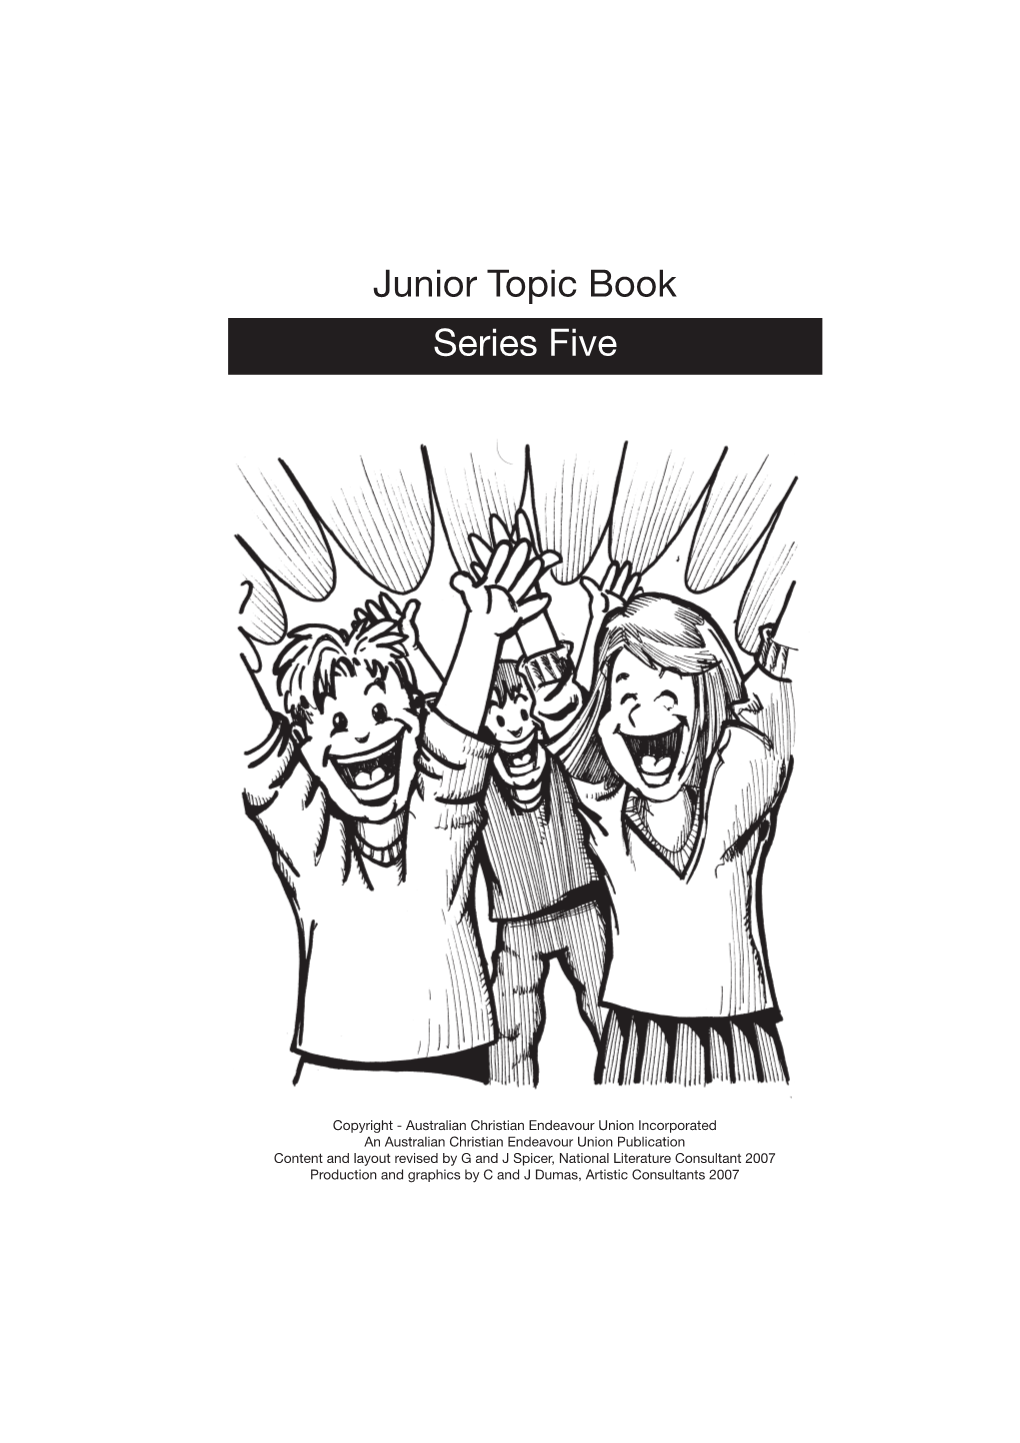 Junior Topic Book Series Five